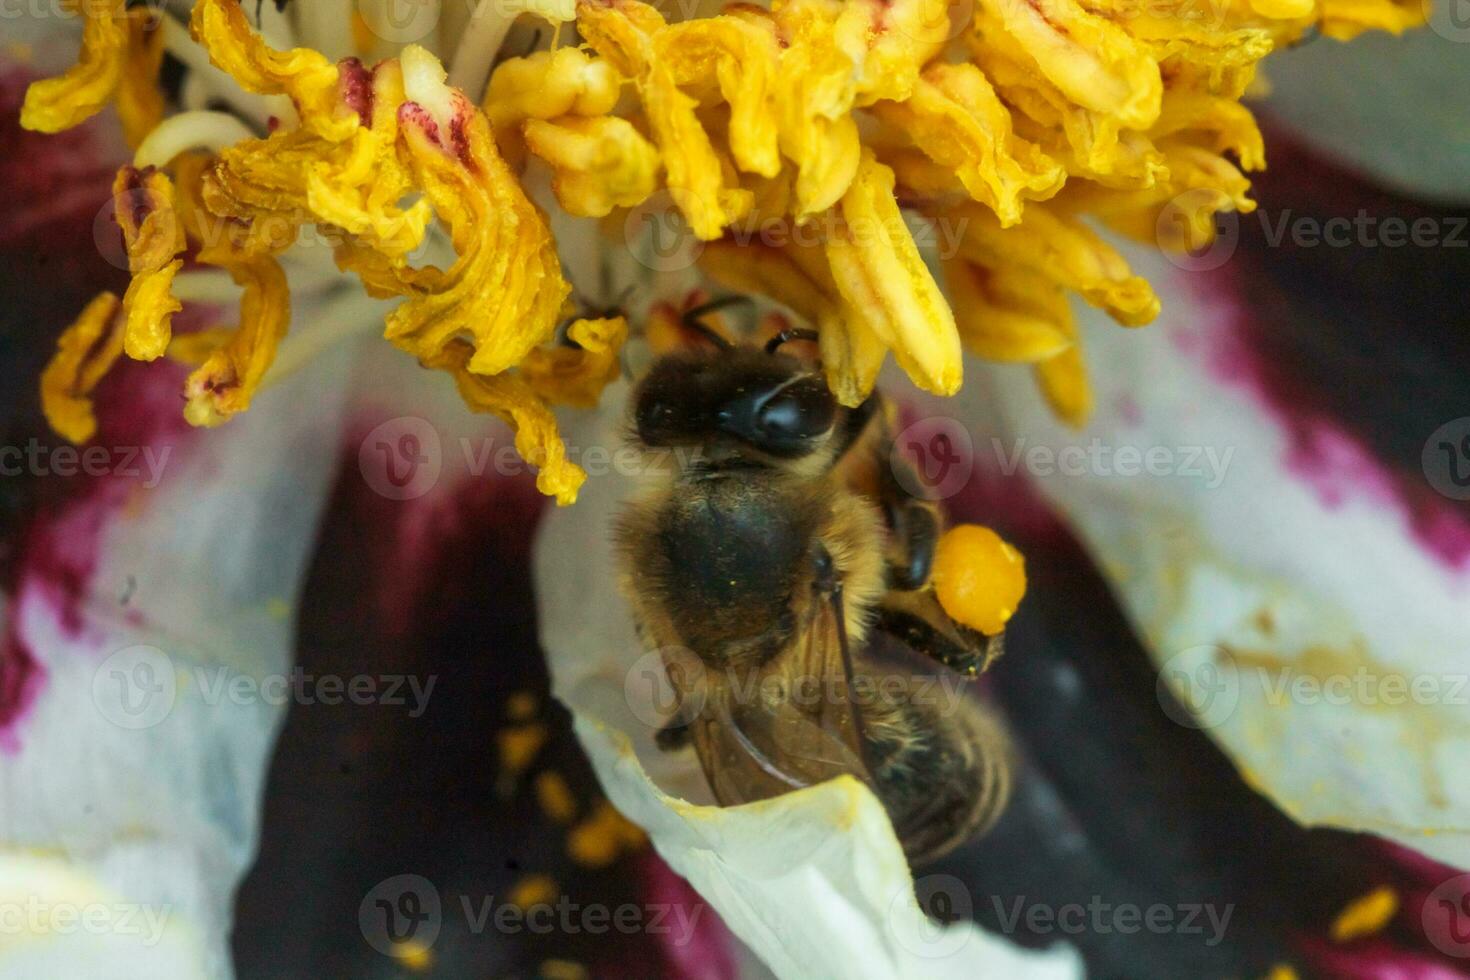 blanc pivoine fleur proche en haut détail. mon chéri abeille avec une fromage blanc sur le coloré péon étamines. les abeilles collecte pollen de paeonia suffruticosa, arbre pivoine ou pivoine fleur. beaucoup les abeilles à l'intérieur le fleur. photo